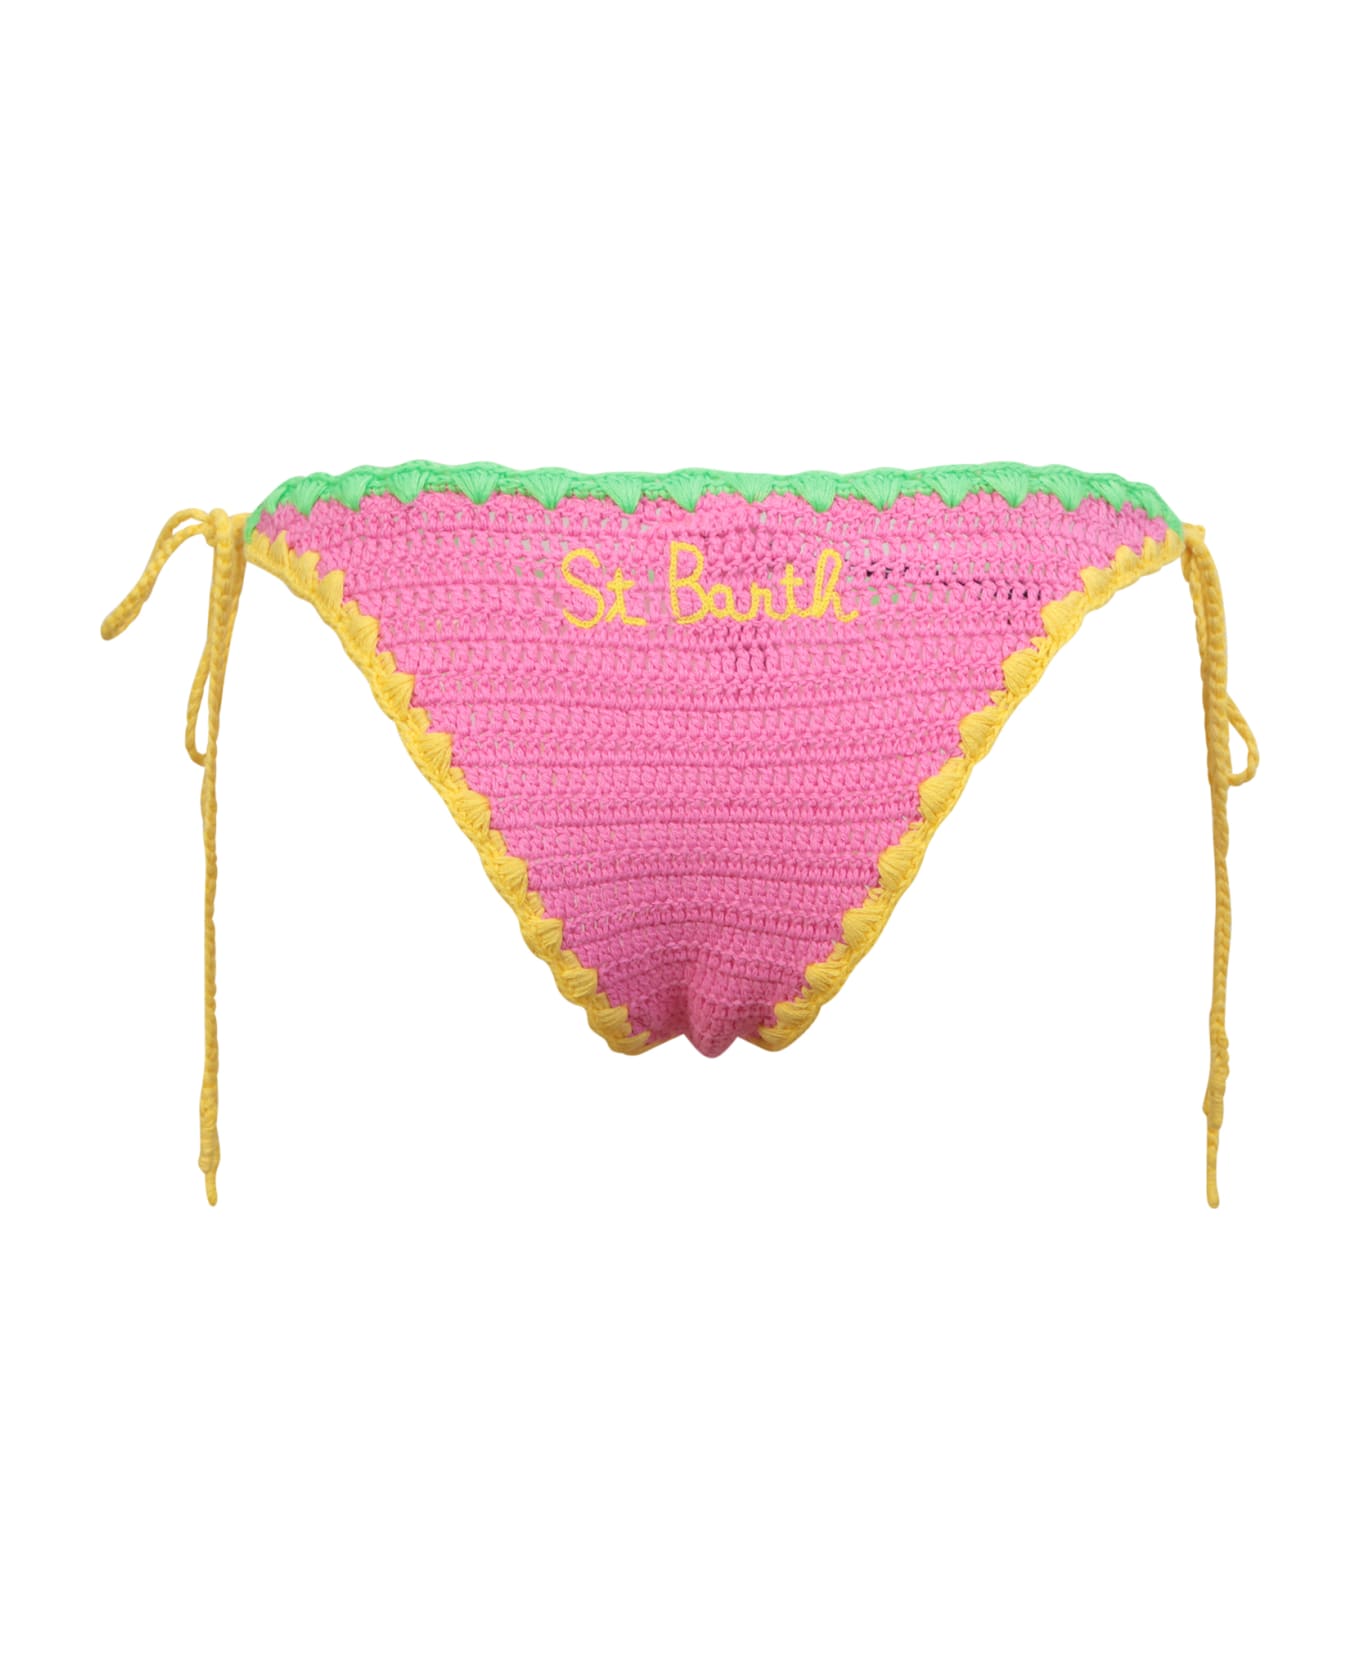 MC2 Saint Barth Pink Crochet Bikini Bottom By Mc2 Saint Barth - Pink